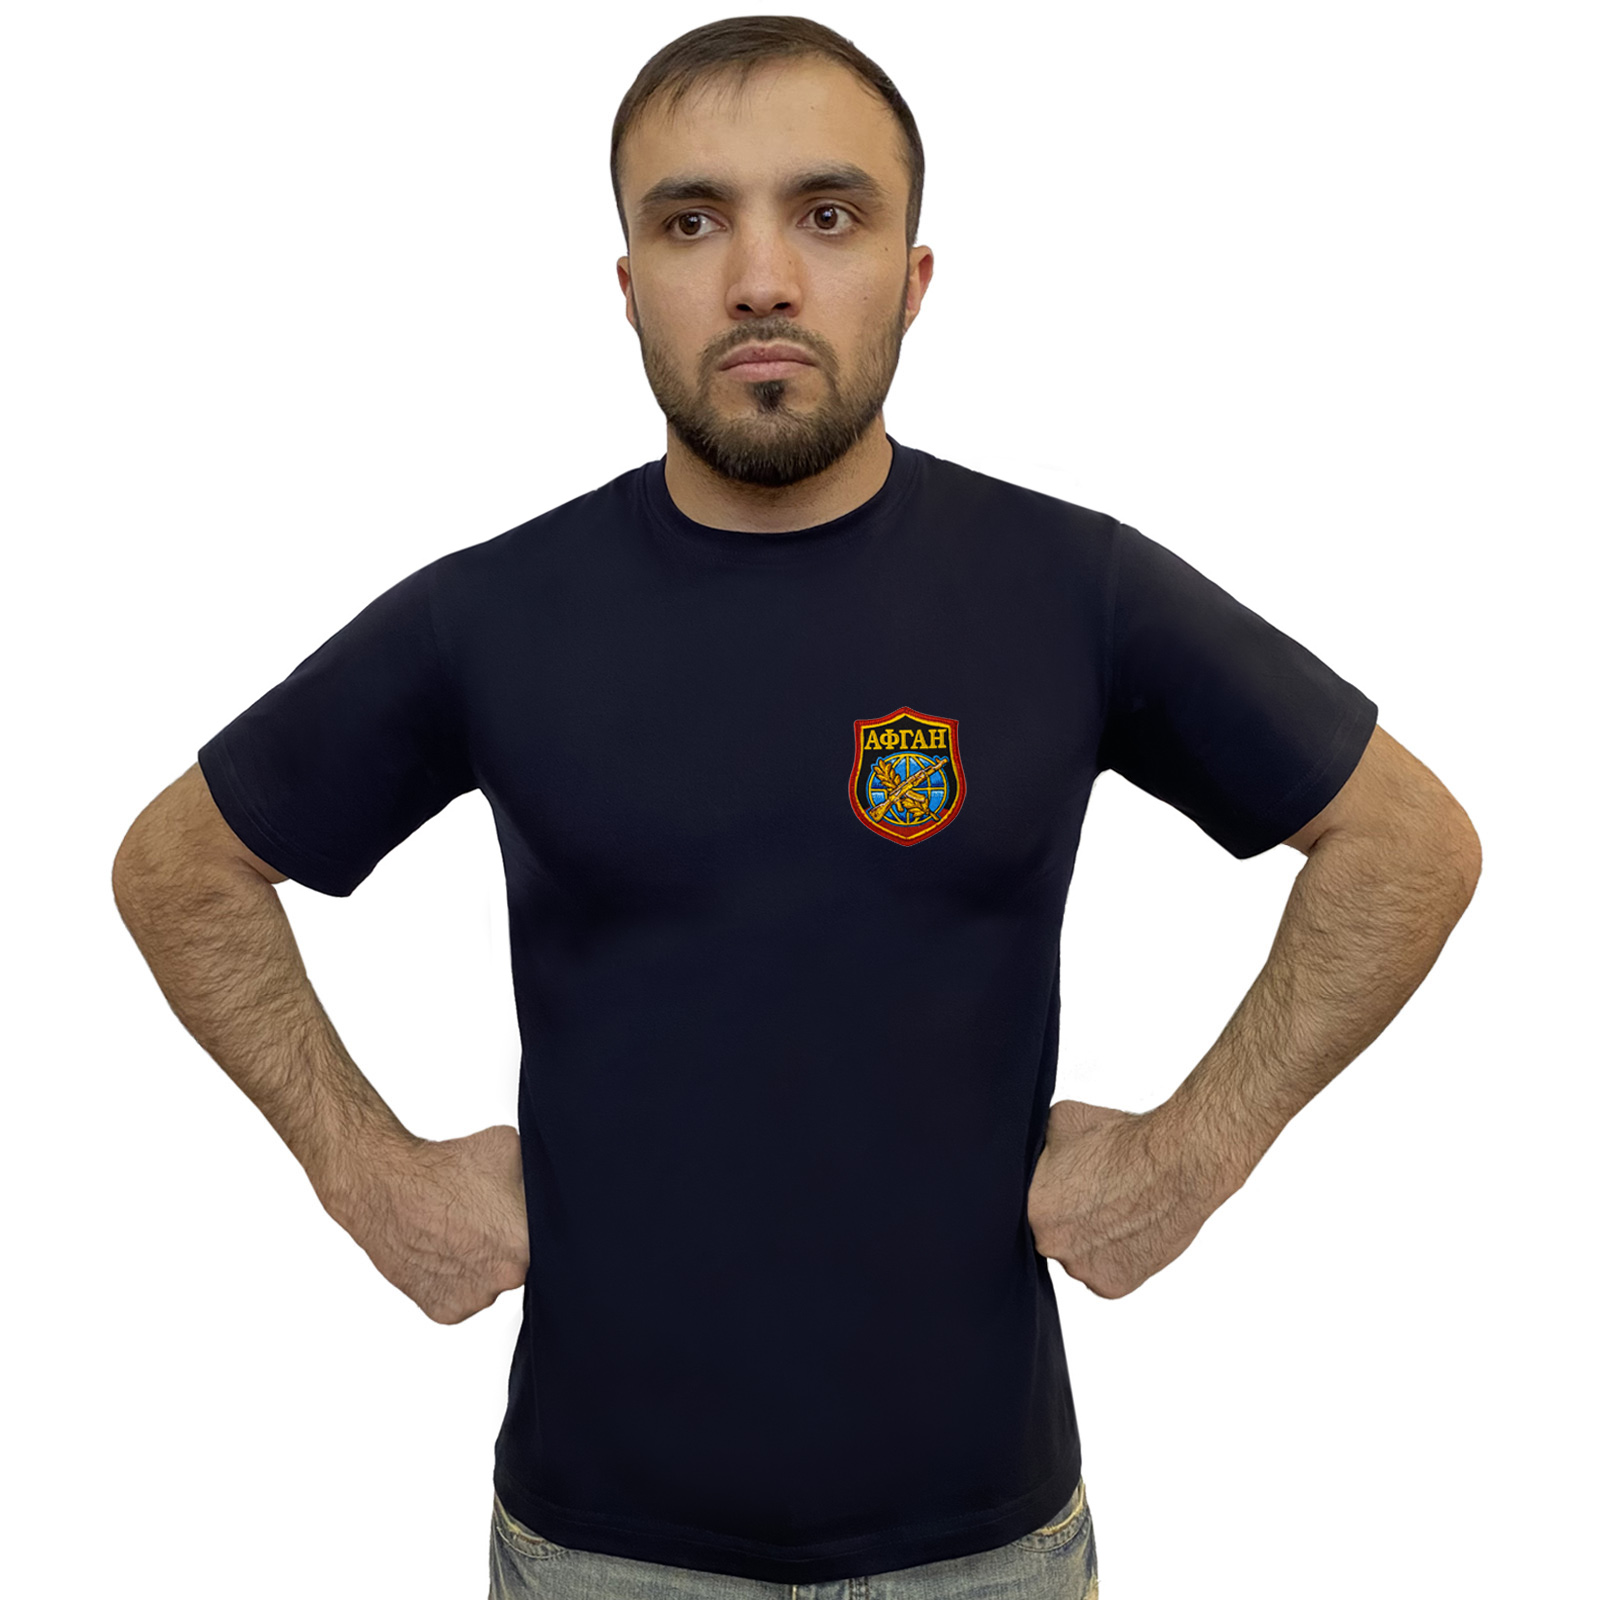 Недорогие футболки с вышивкой Афганистан